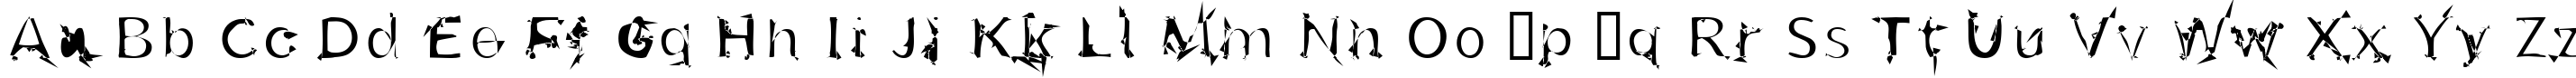 Пример написания английского алфавита шрифтом u26fog